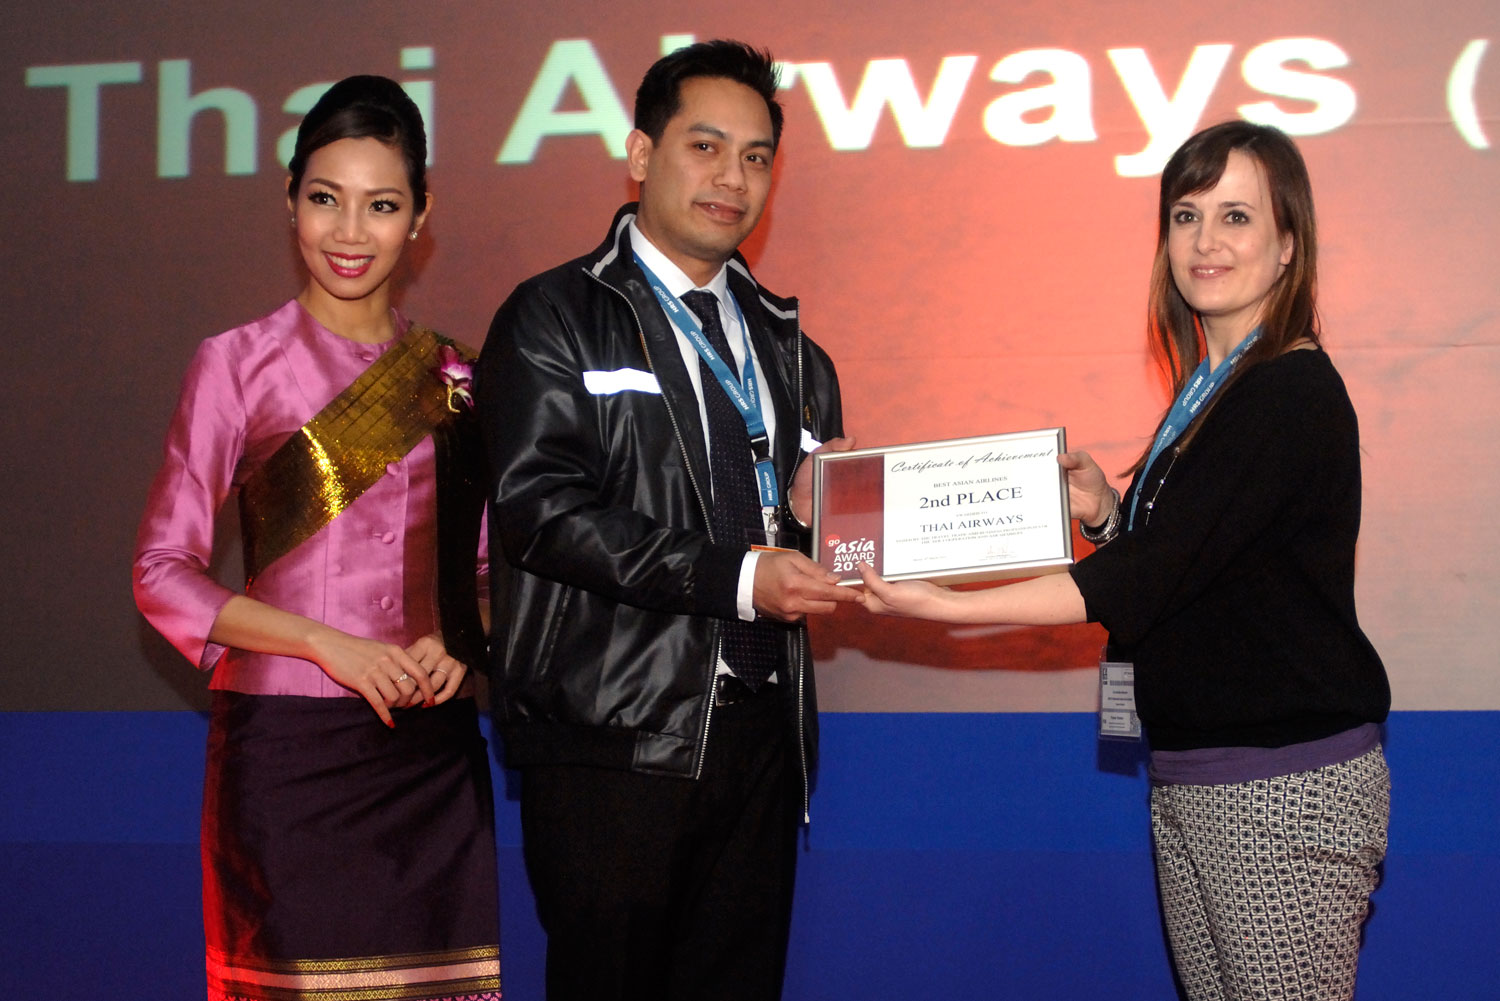 goasia-award-thai-airways